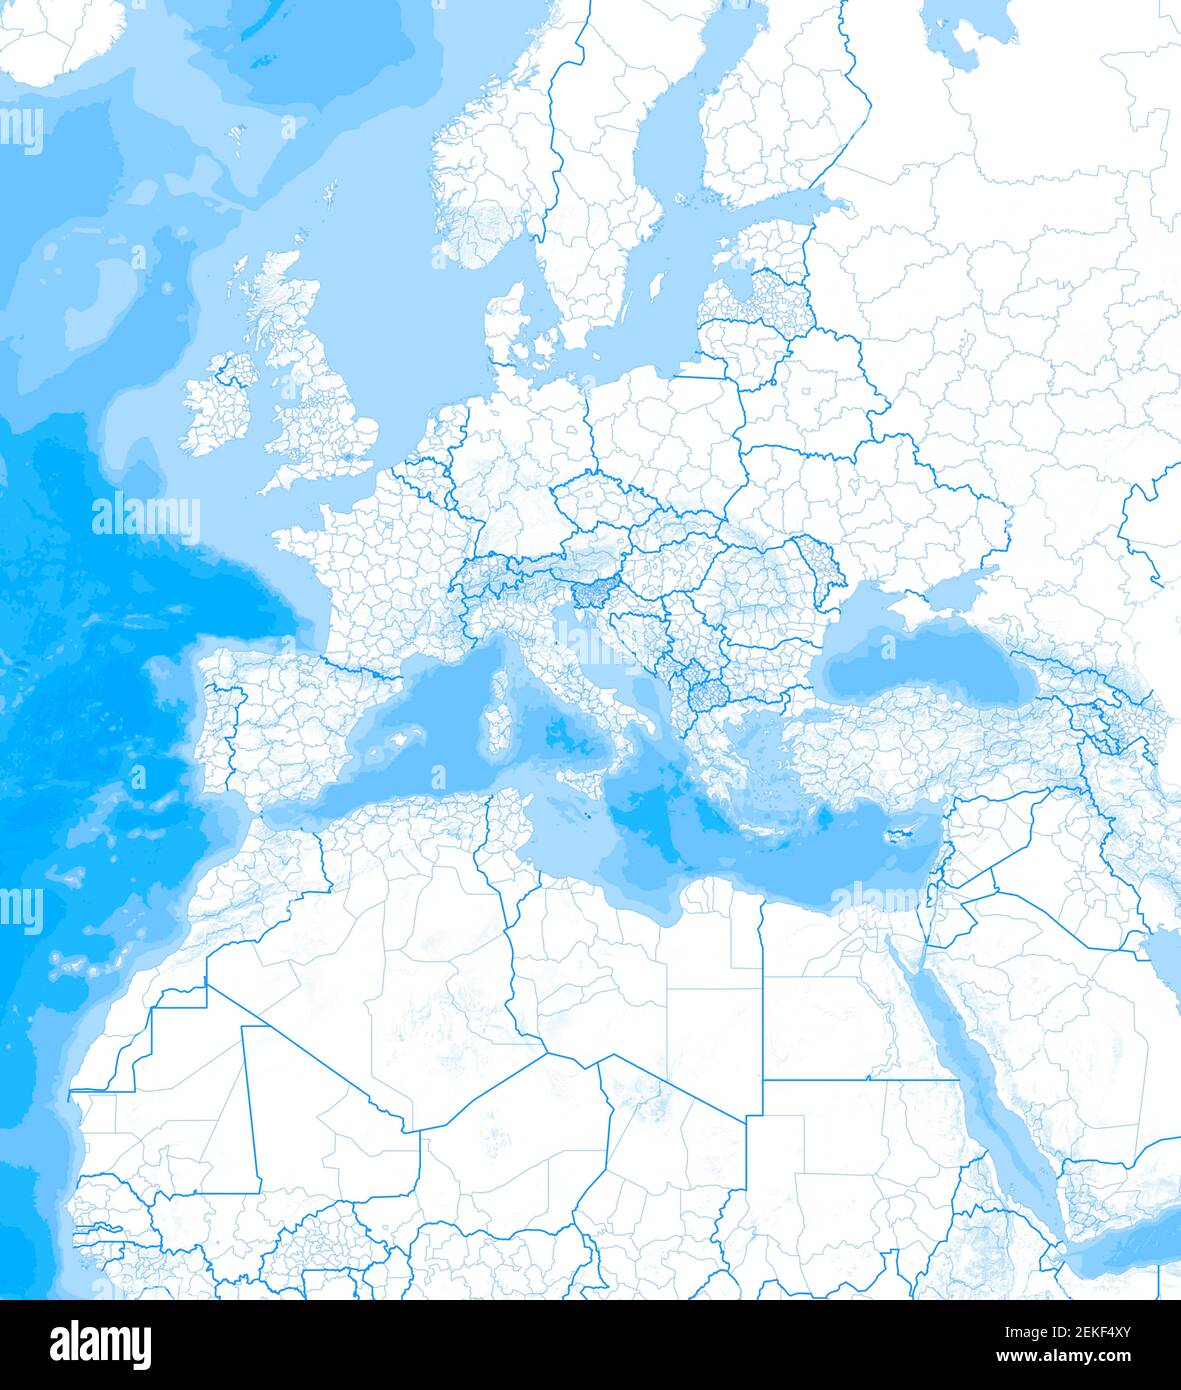 Mappa del Mar Mediterraneo e dell'Europa, dell'Africa e del Medio Oriente. Cartografia, atlante geografico. rendering 3d. Confini e rilievi di montagna Foto Stock